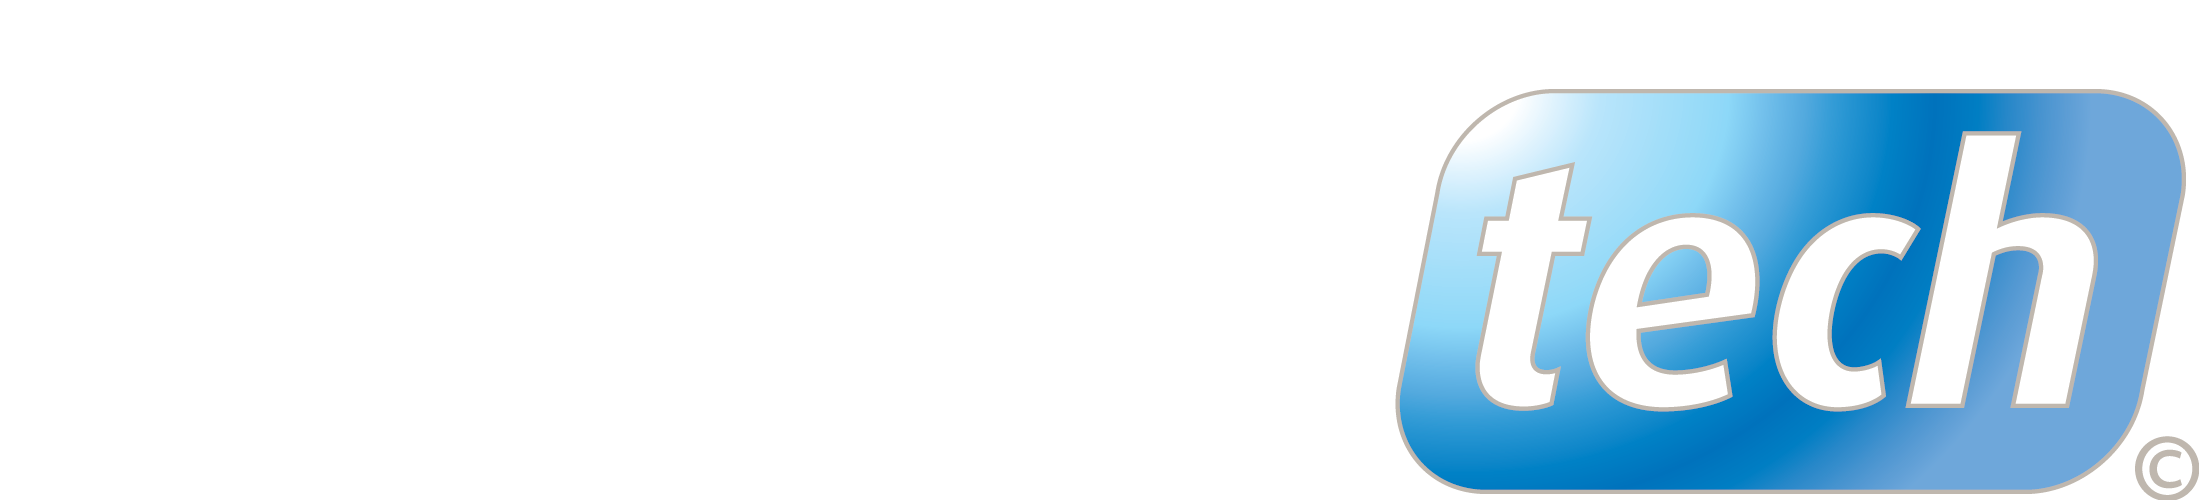 Sub Aqua Tech